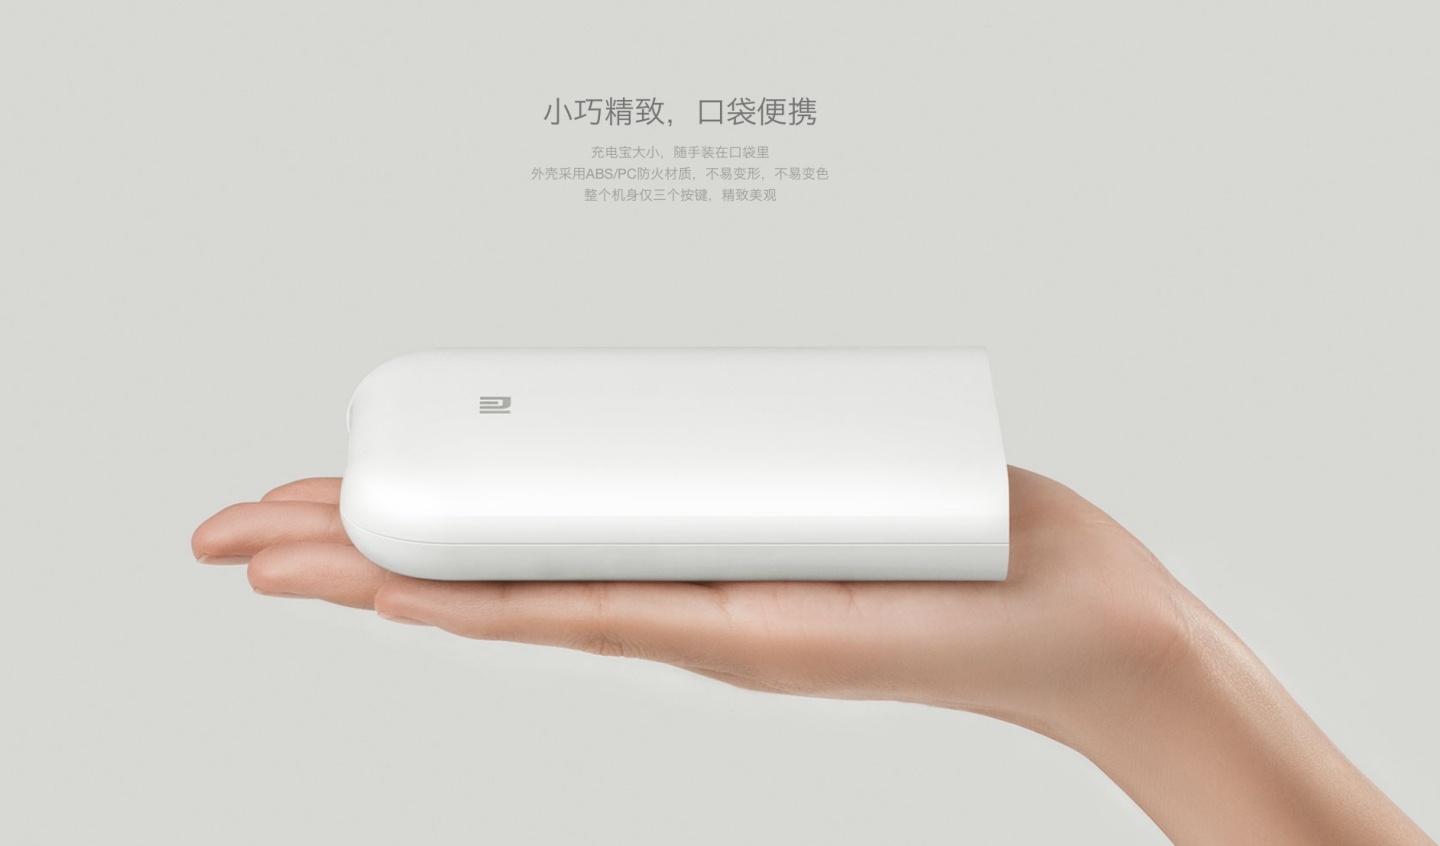 『 小米便攜相片印表機 』即將在台灣上市！還可以列印 AR 動態相片、留聲相片！售價只要約 1500 元！